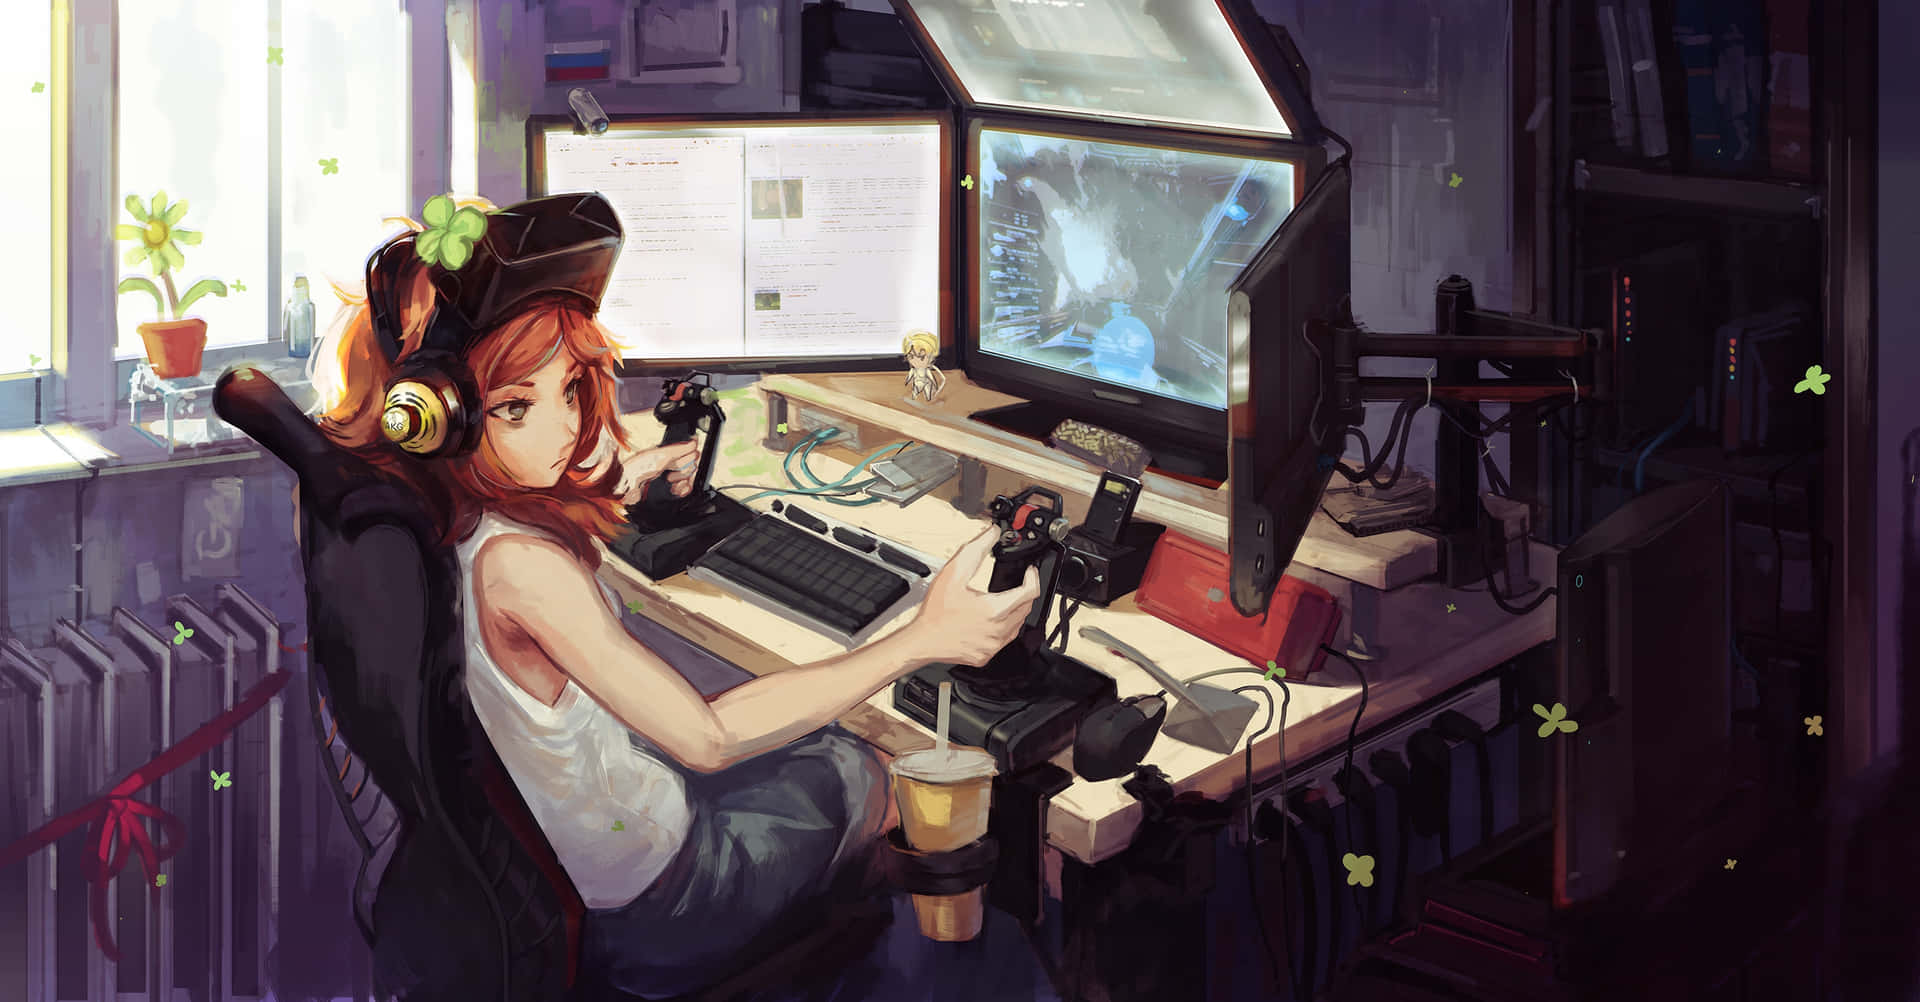 Cyberpunk Gamer Girl Setup Wallpaper